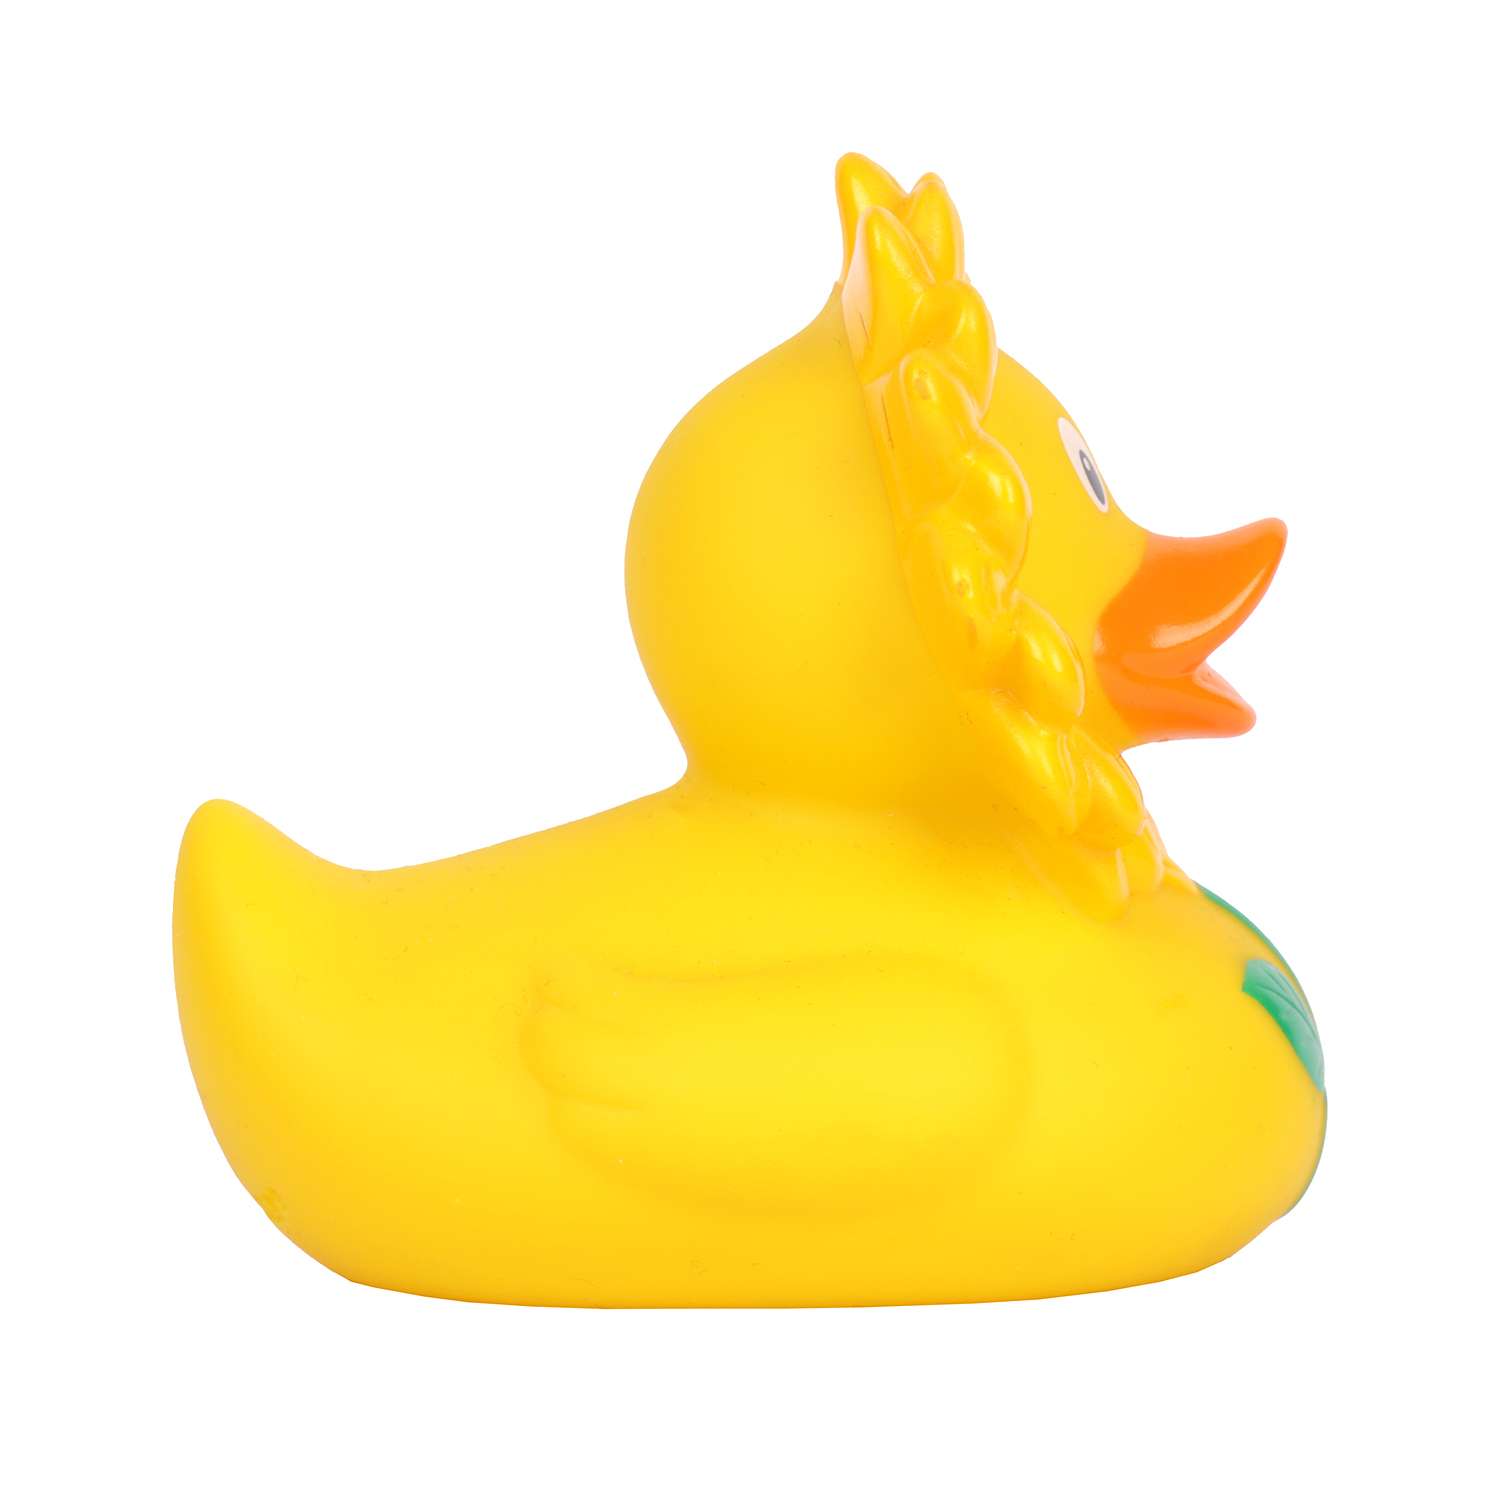 Игрушка для ванны сувенир Funny ducks Подсолнух уточка 1876 - фото 3